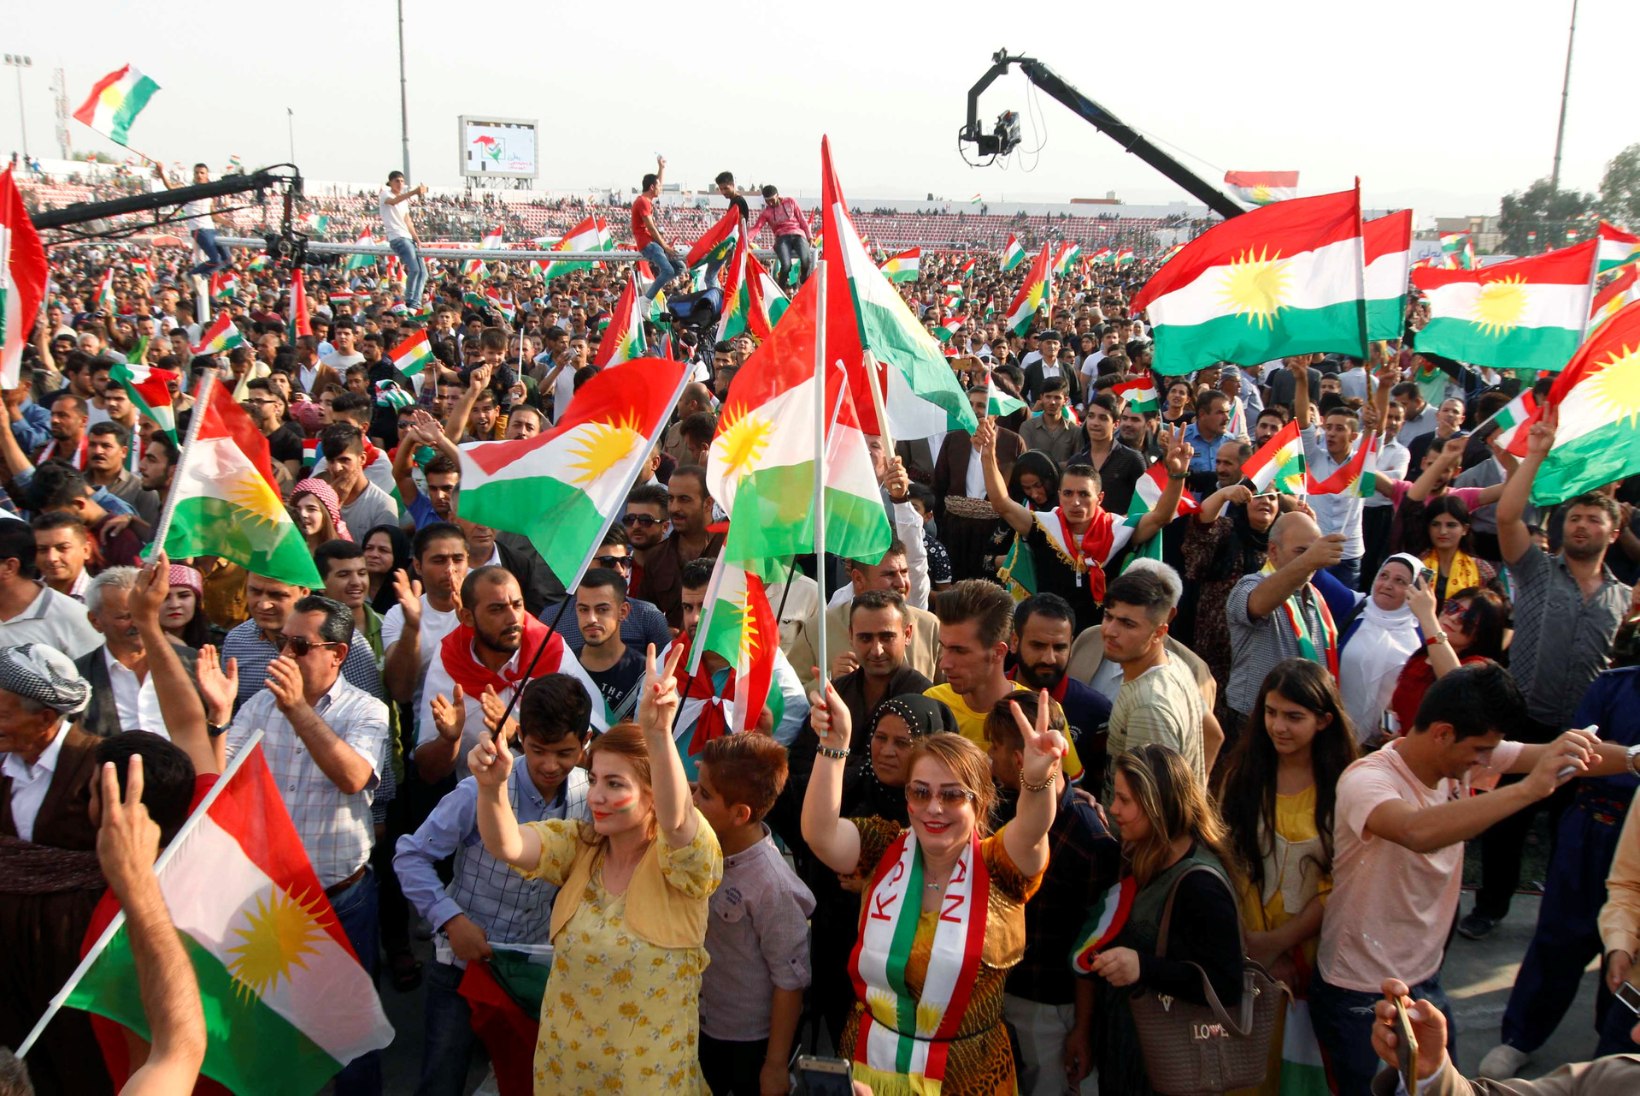 PINGE KASVAB: Iraagi kurdide iseseisvusreferendum võib vallandada Lähis-Idas sõja